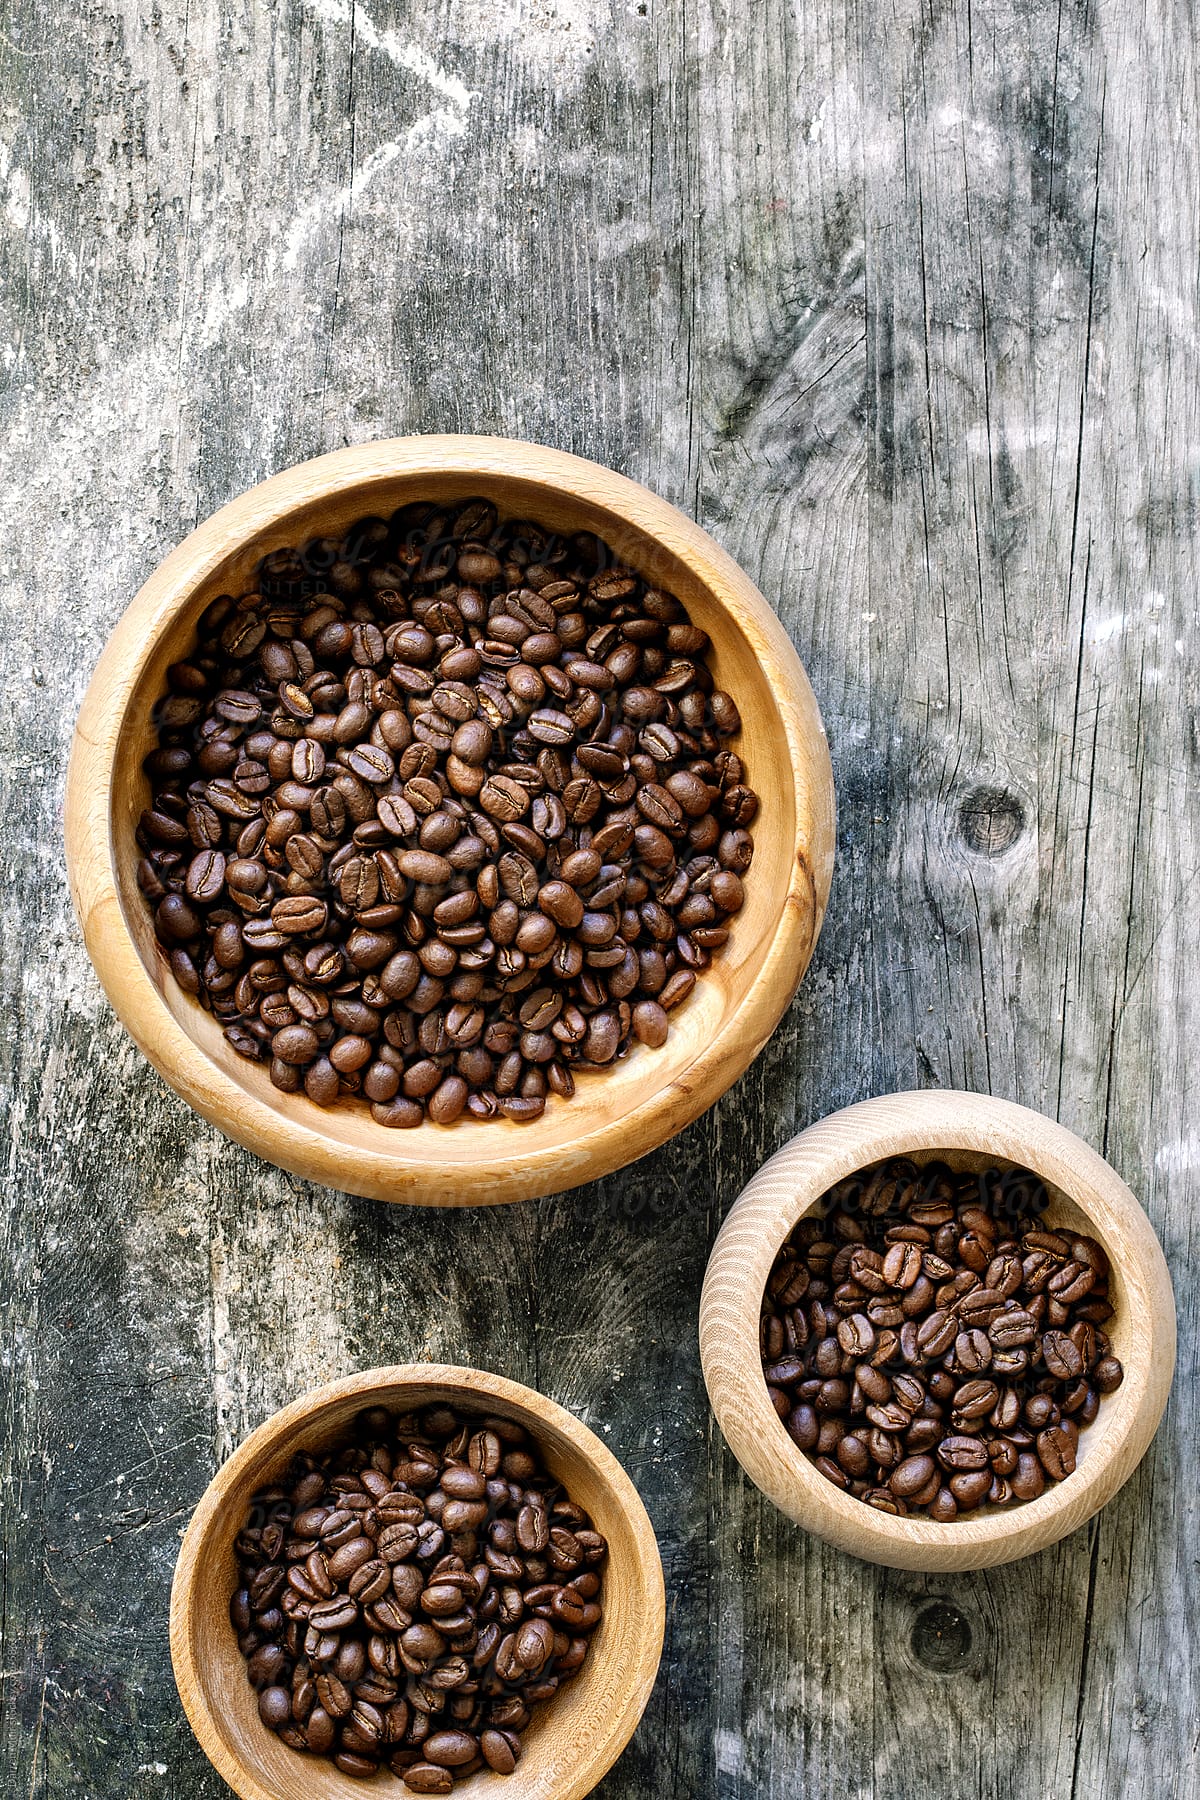 Fair trade coffee beans.